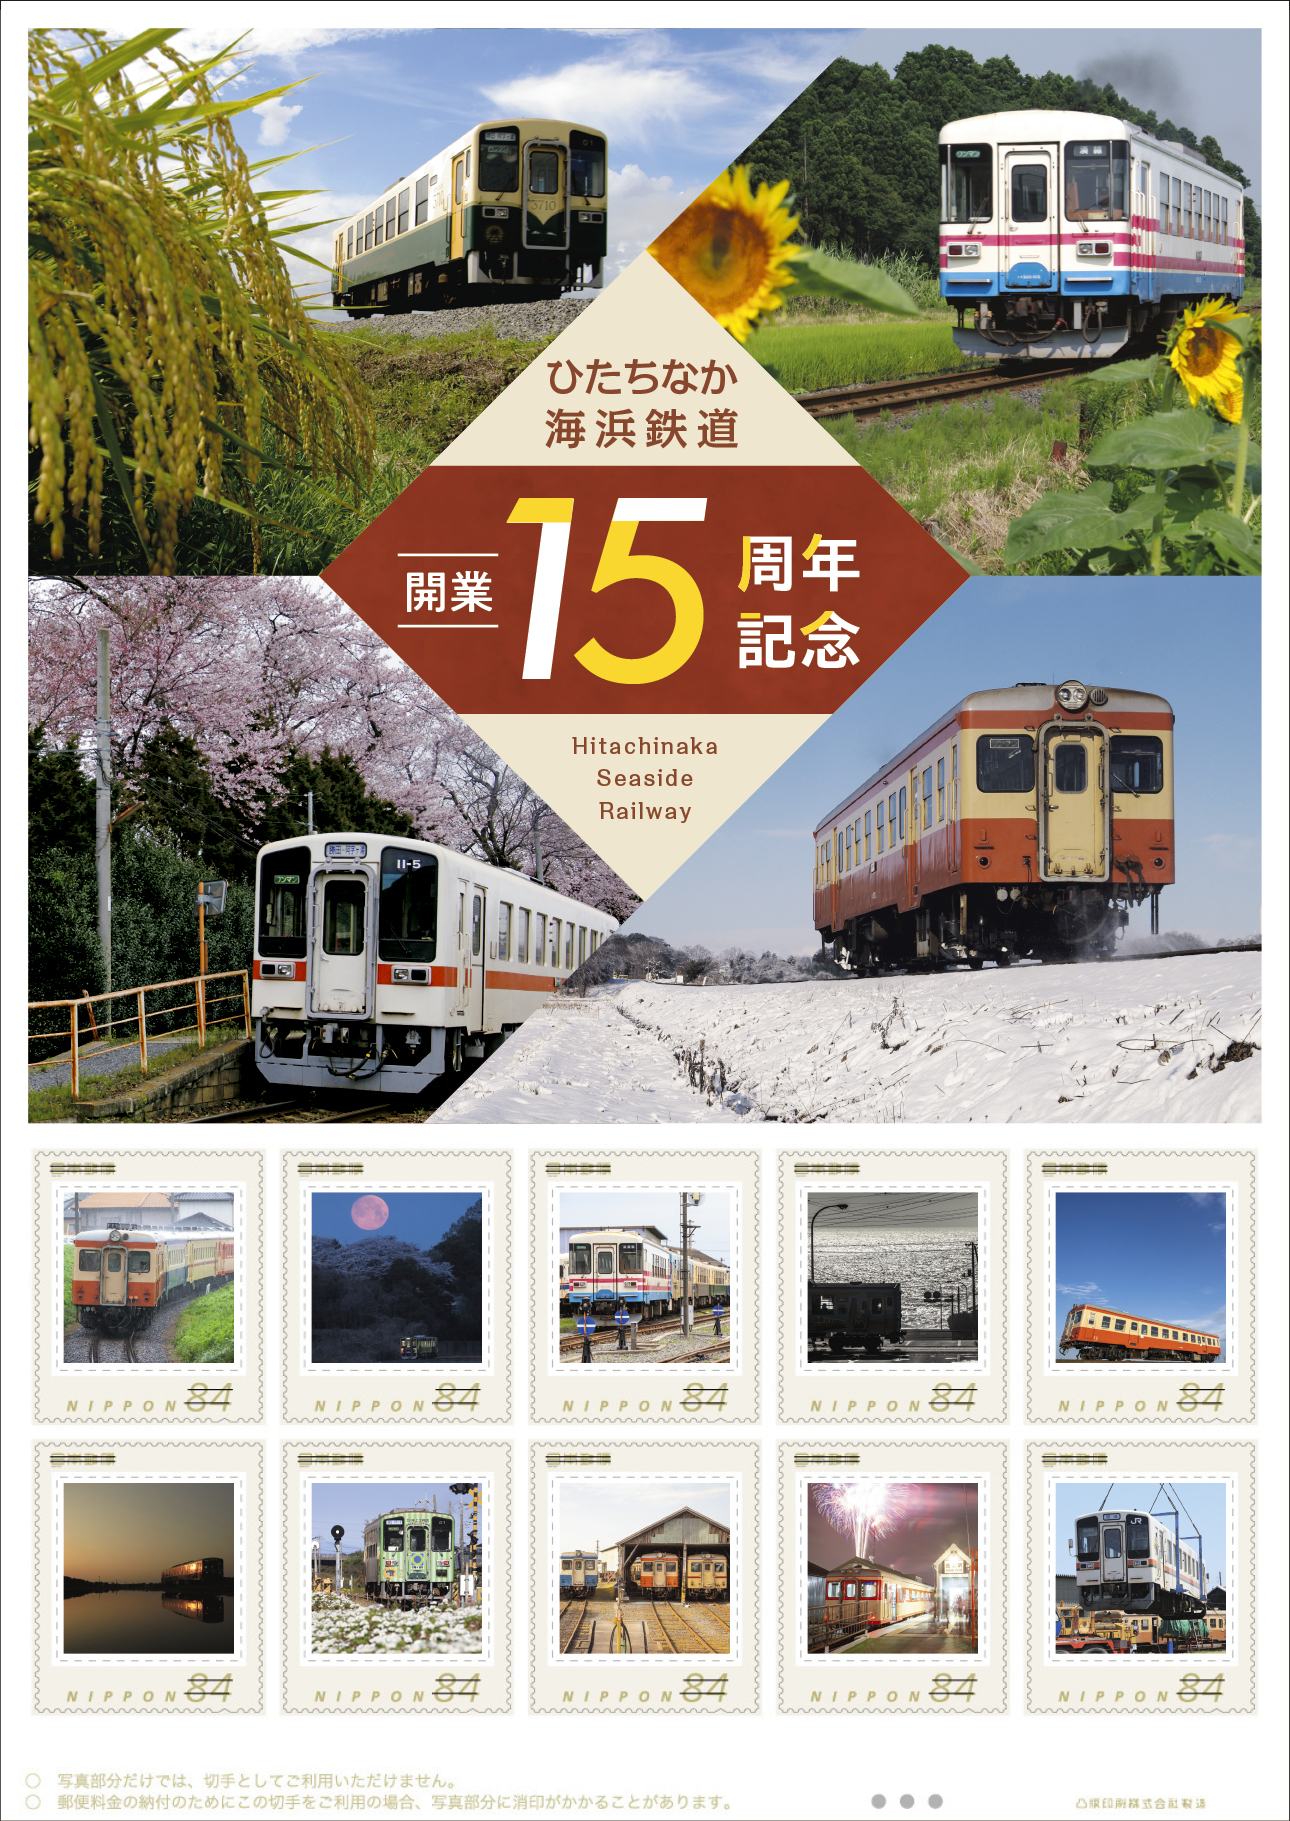 オリジナル フレーム切手「ひたちなか海浜鉄道開業15周年記念」の販売開始と贈呈式の開催